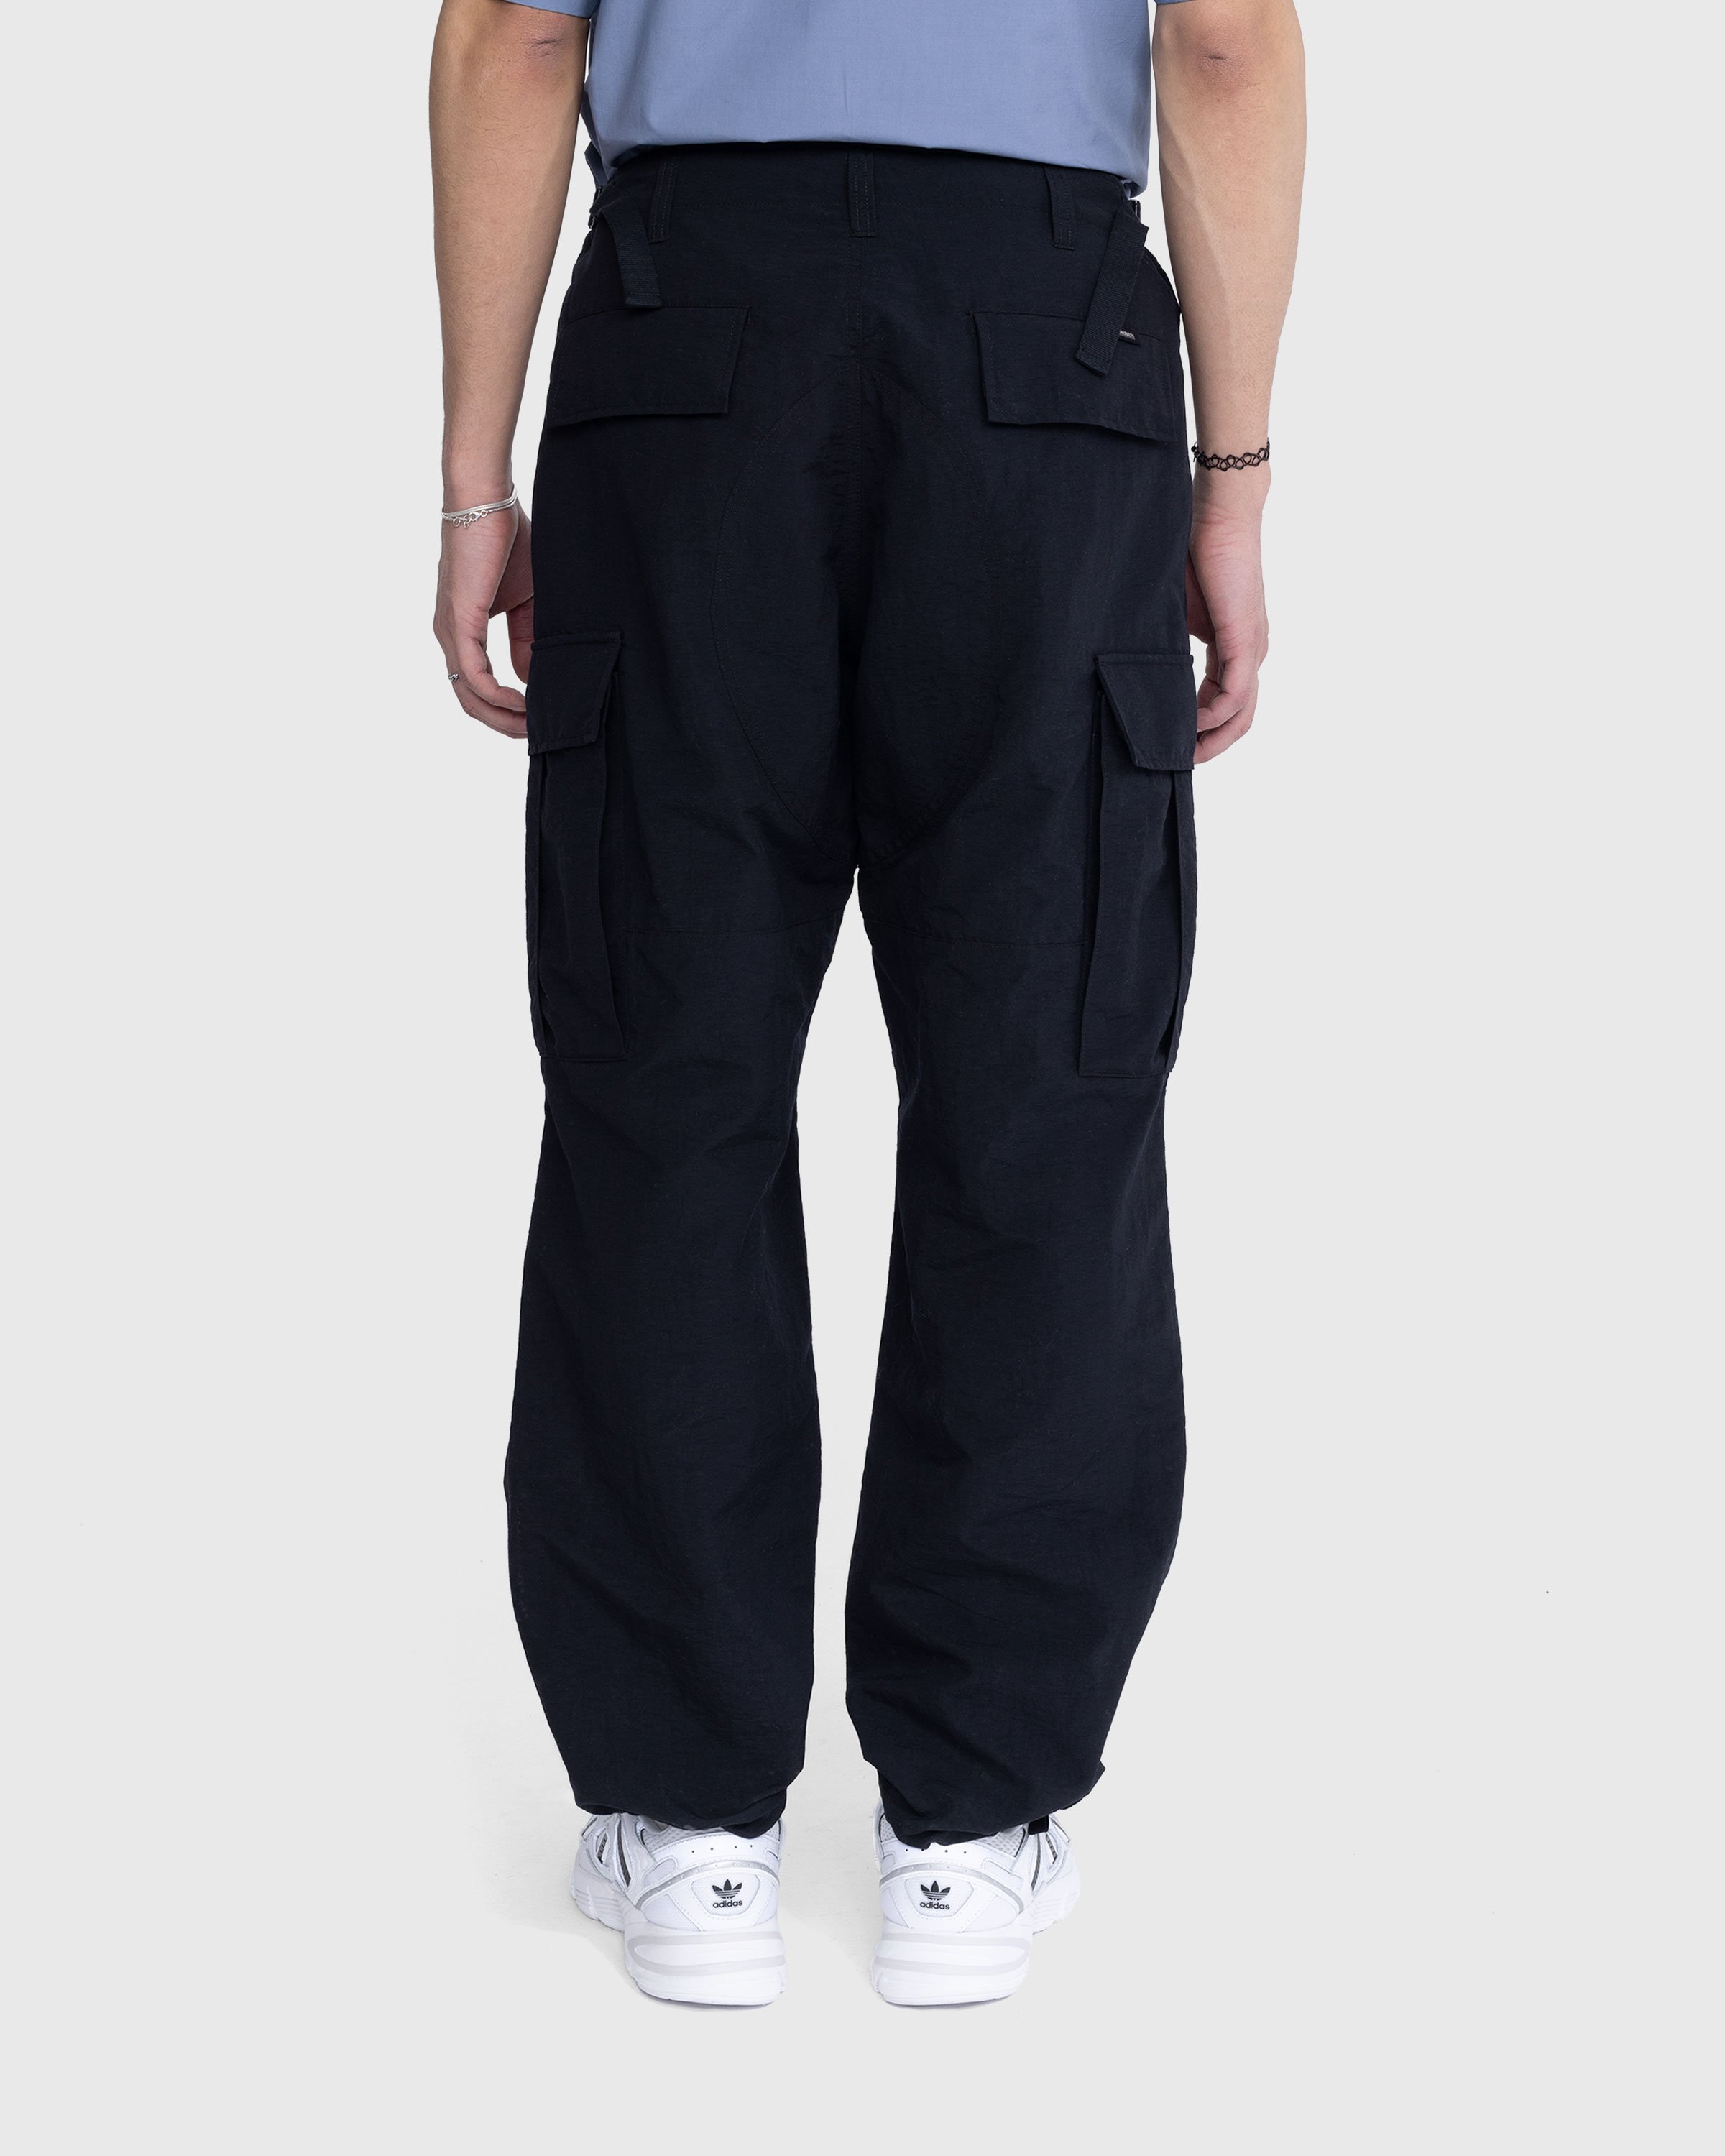 Highsnobiety - Nylon Cargo Pants Black - Clothing - Black - Image 3